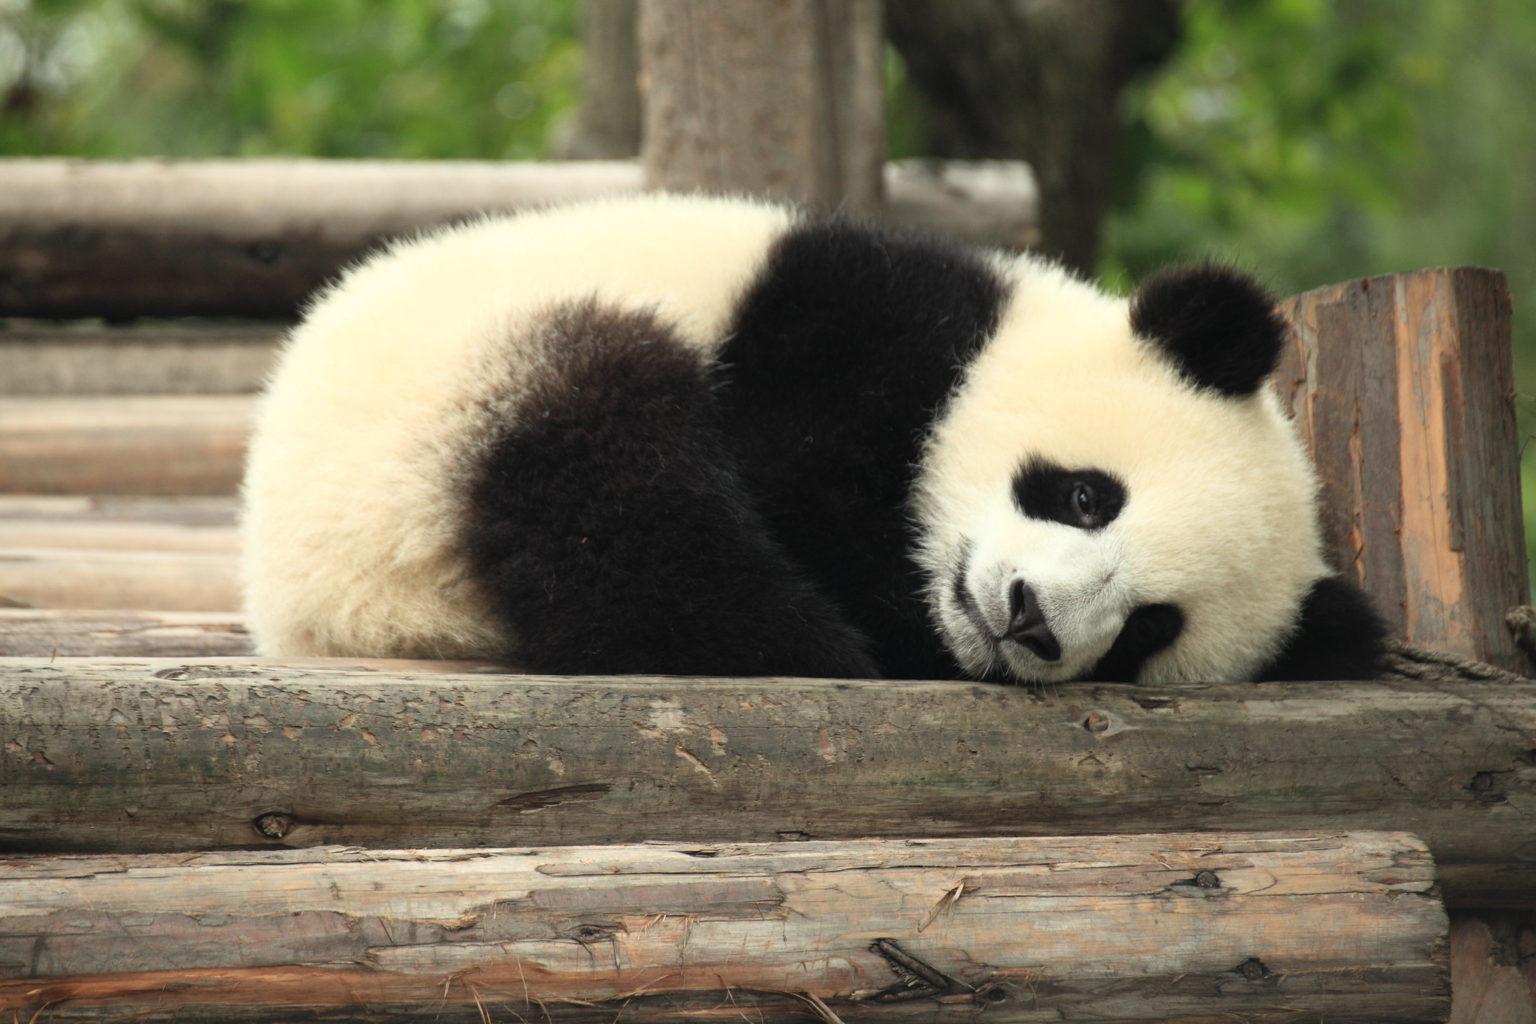 Panda napping